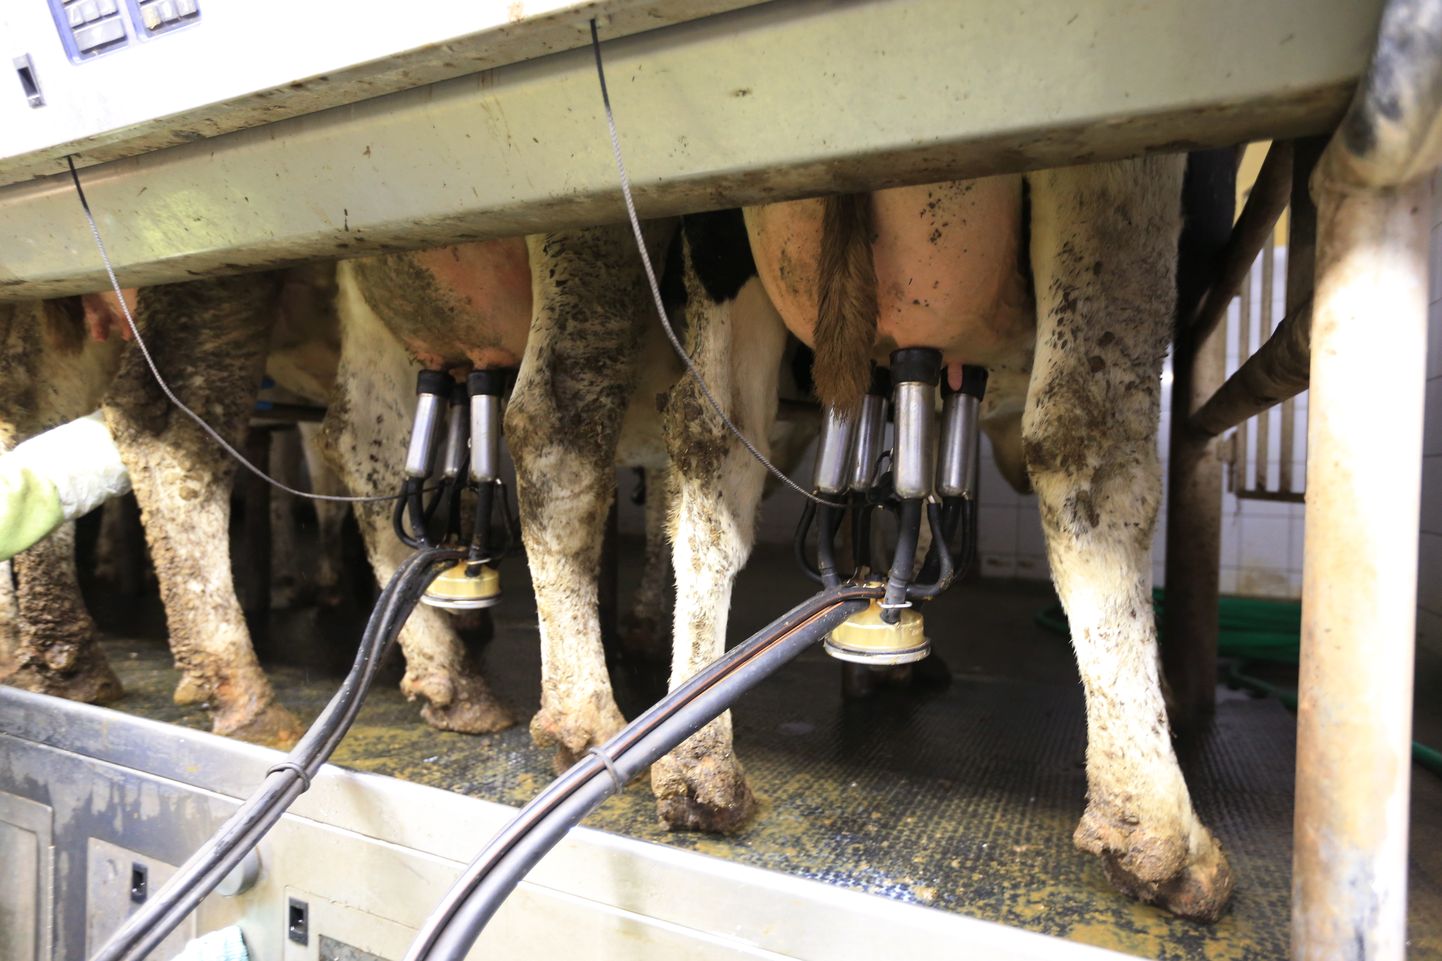 Põllumajanduskoja värske küsitlus näitab, et Eesti piimafarmides töötab ligikaudu 400 Ukraina töölist, kellest umbes pooled on piimatootmise seisukohalt võtmetähtsusega lüpsjad. Lähikuudel oleks umbes pooltel piimafarmide välistöötajatel töötamise luba lõppenud.